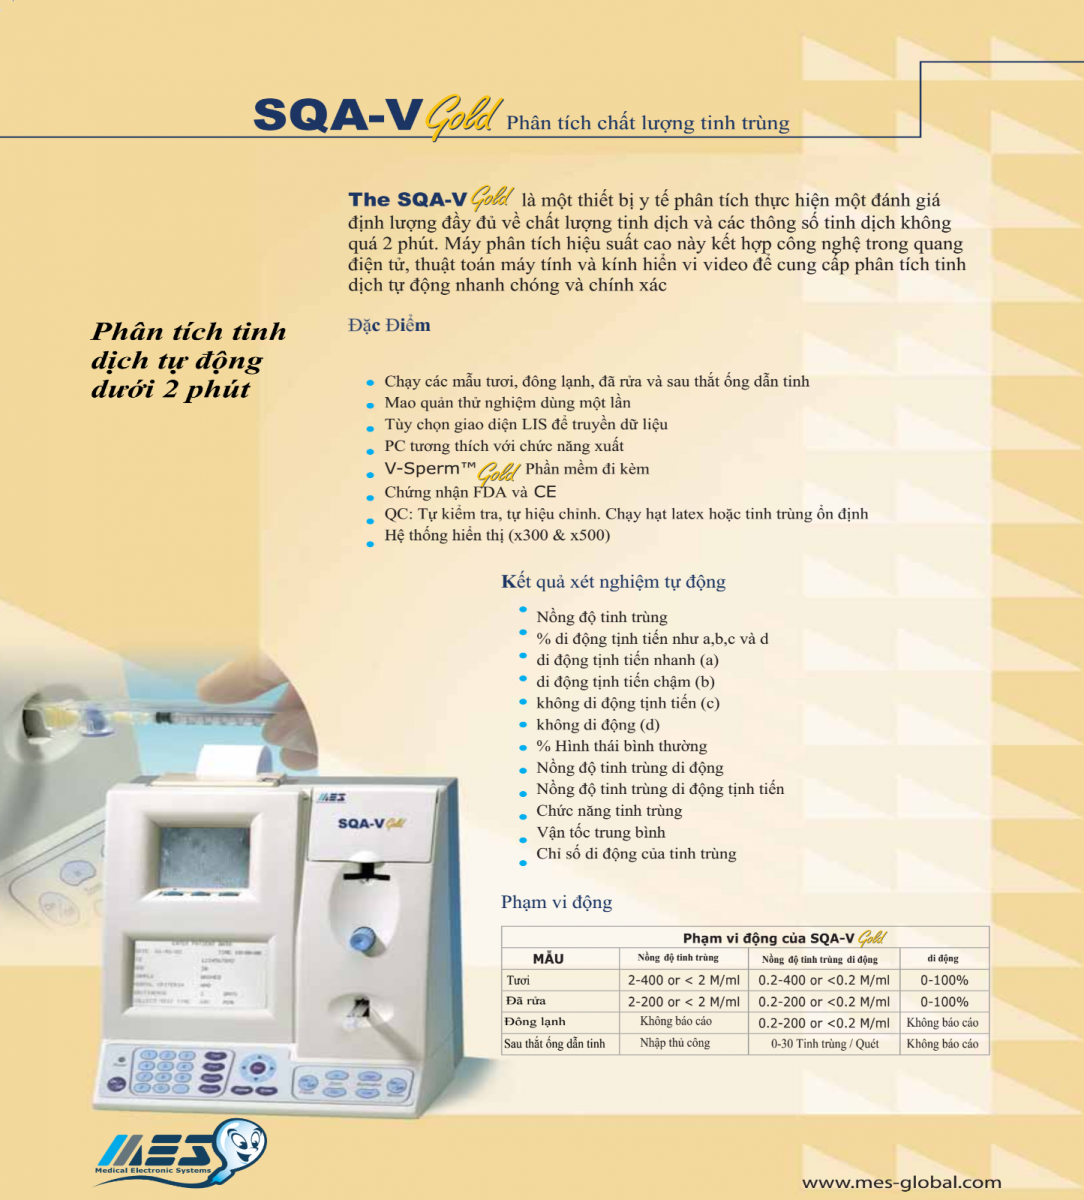 Máy phân tích tinh trùng SQA-V Gold